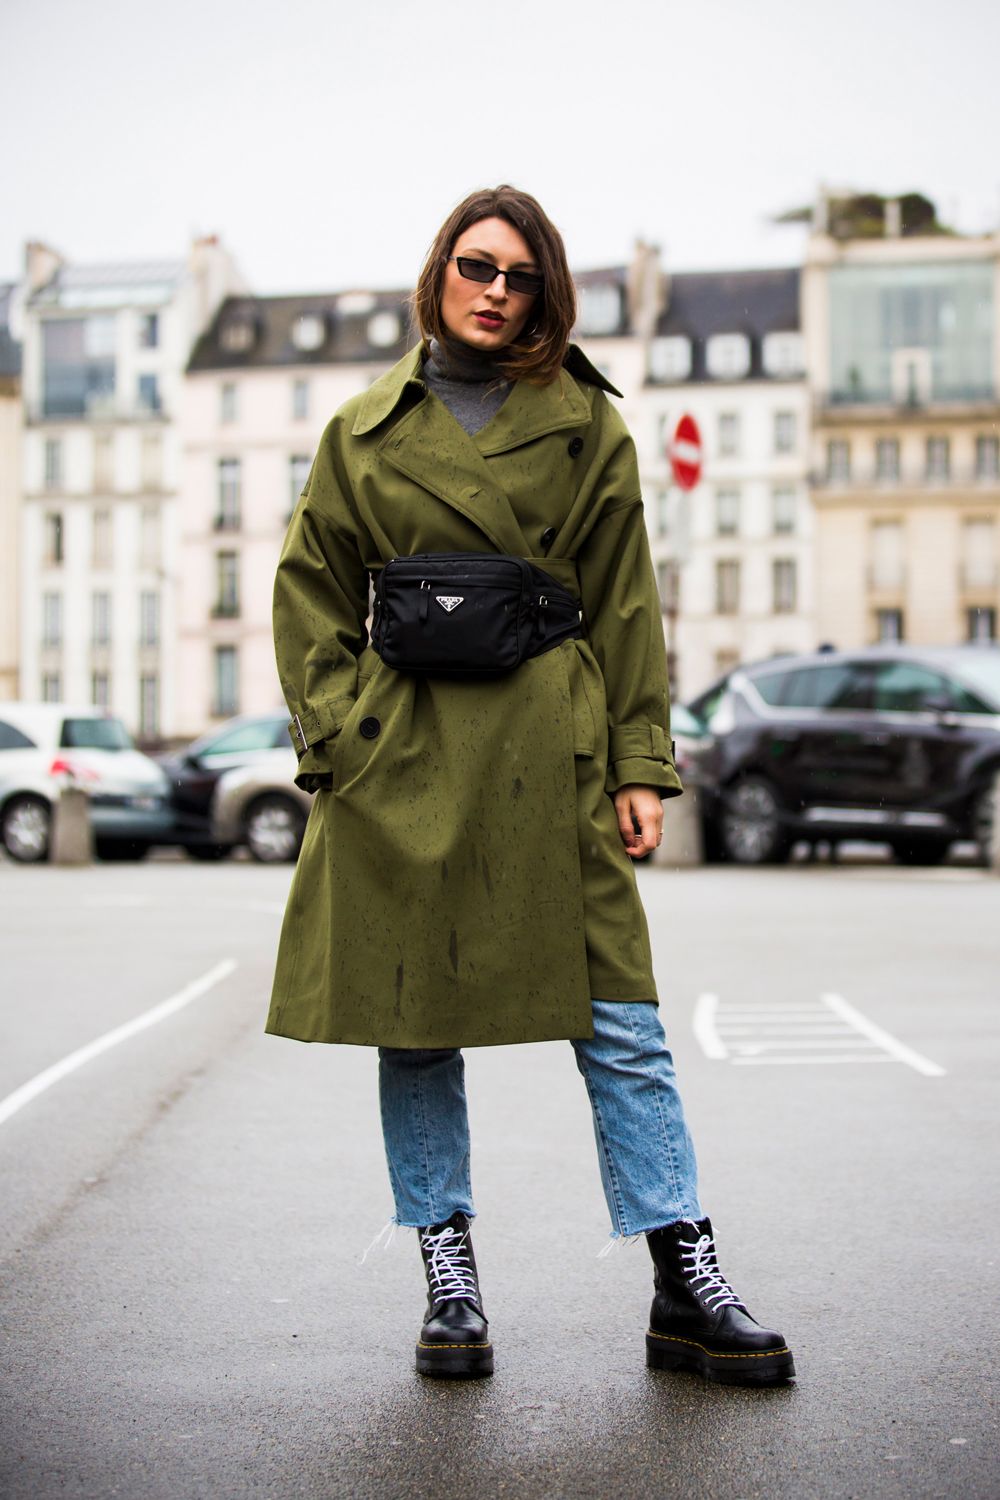 Scarpe moda 2019, gli abbinamenti con le Dr. Martens con le tendenze street  style